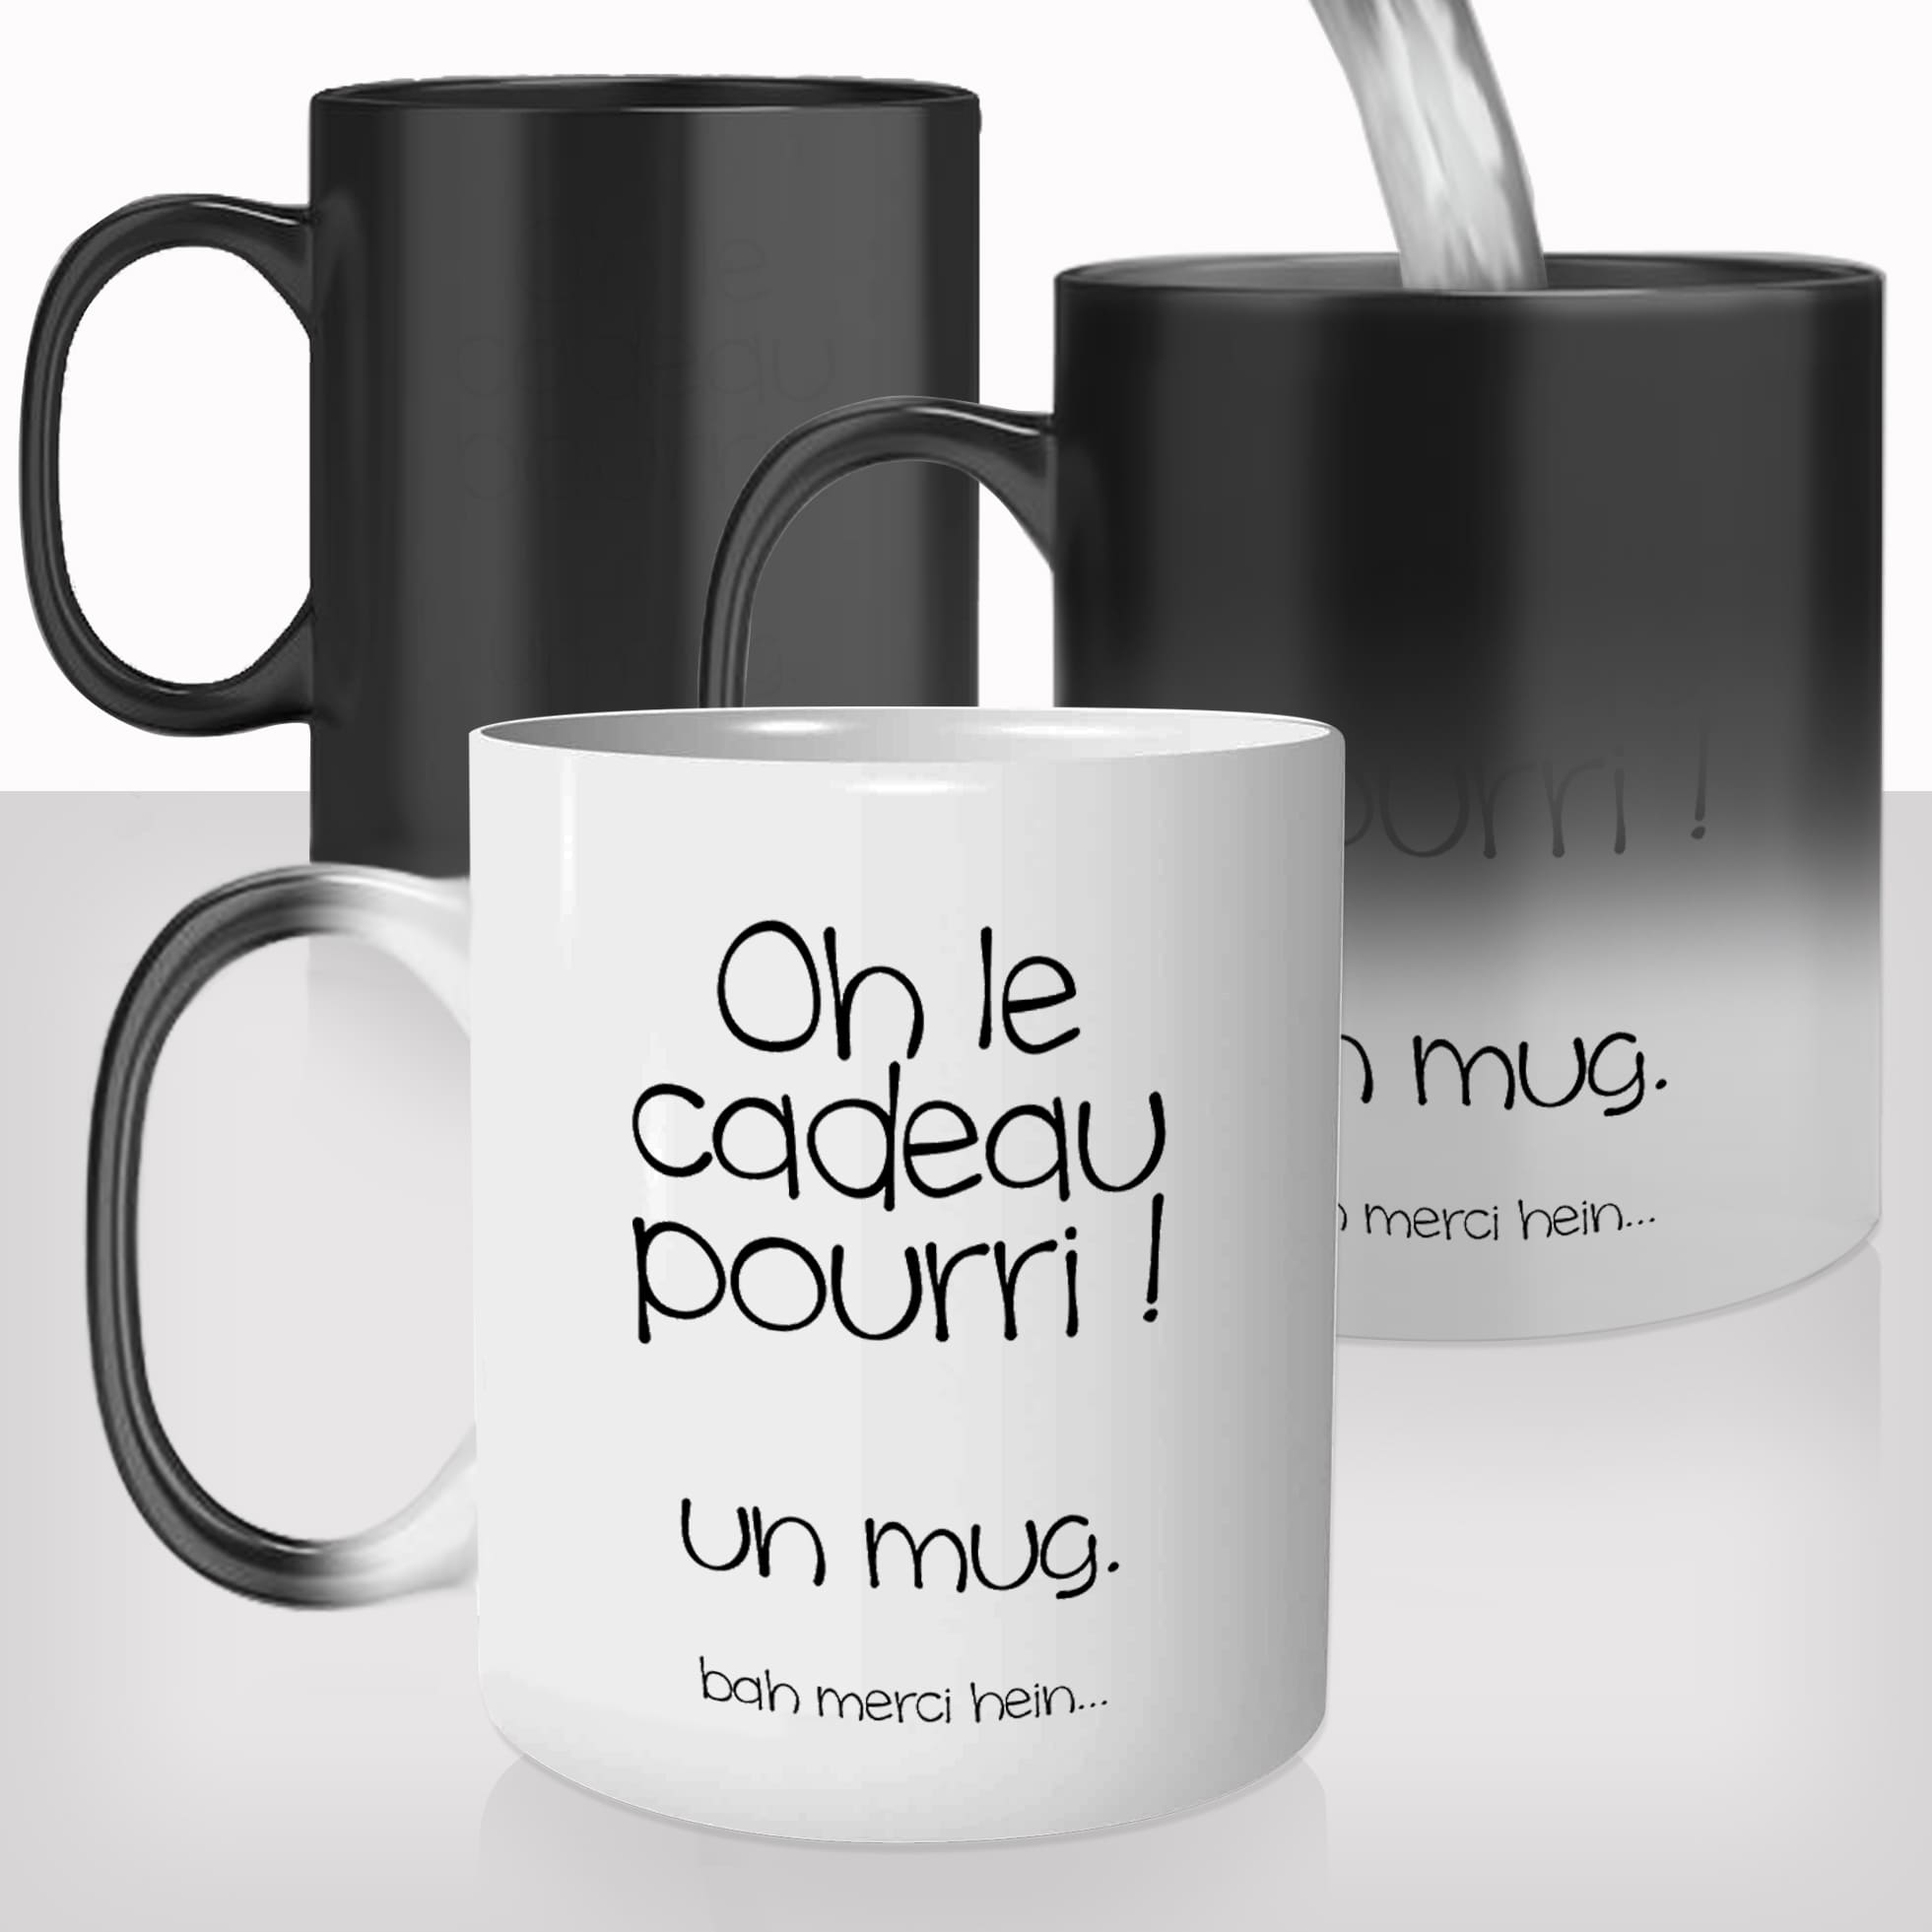 mug-tasse-magique-thermique-thermoreactif-personnalisé-personnalisable-prenom-offrir-idée-cadeau-pourri-nul-drole-original-café-thé-2